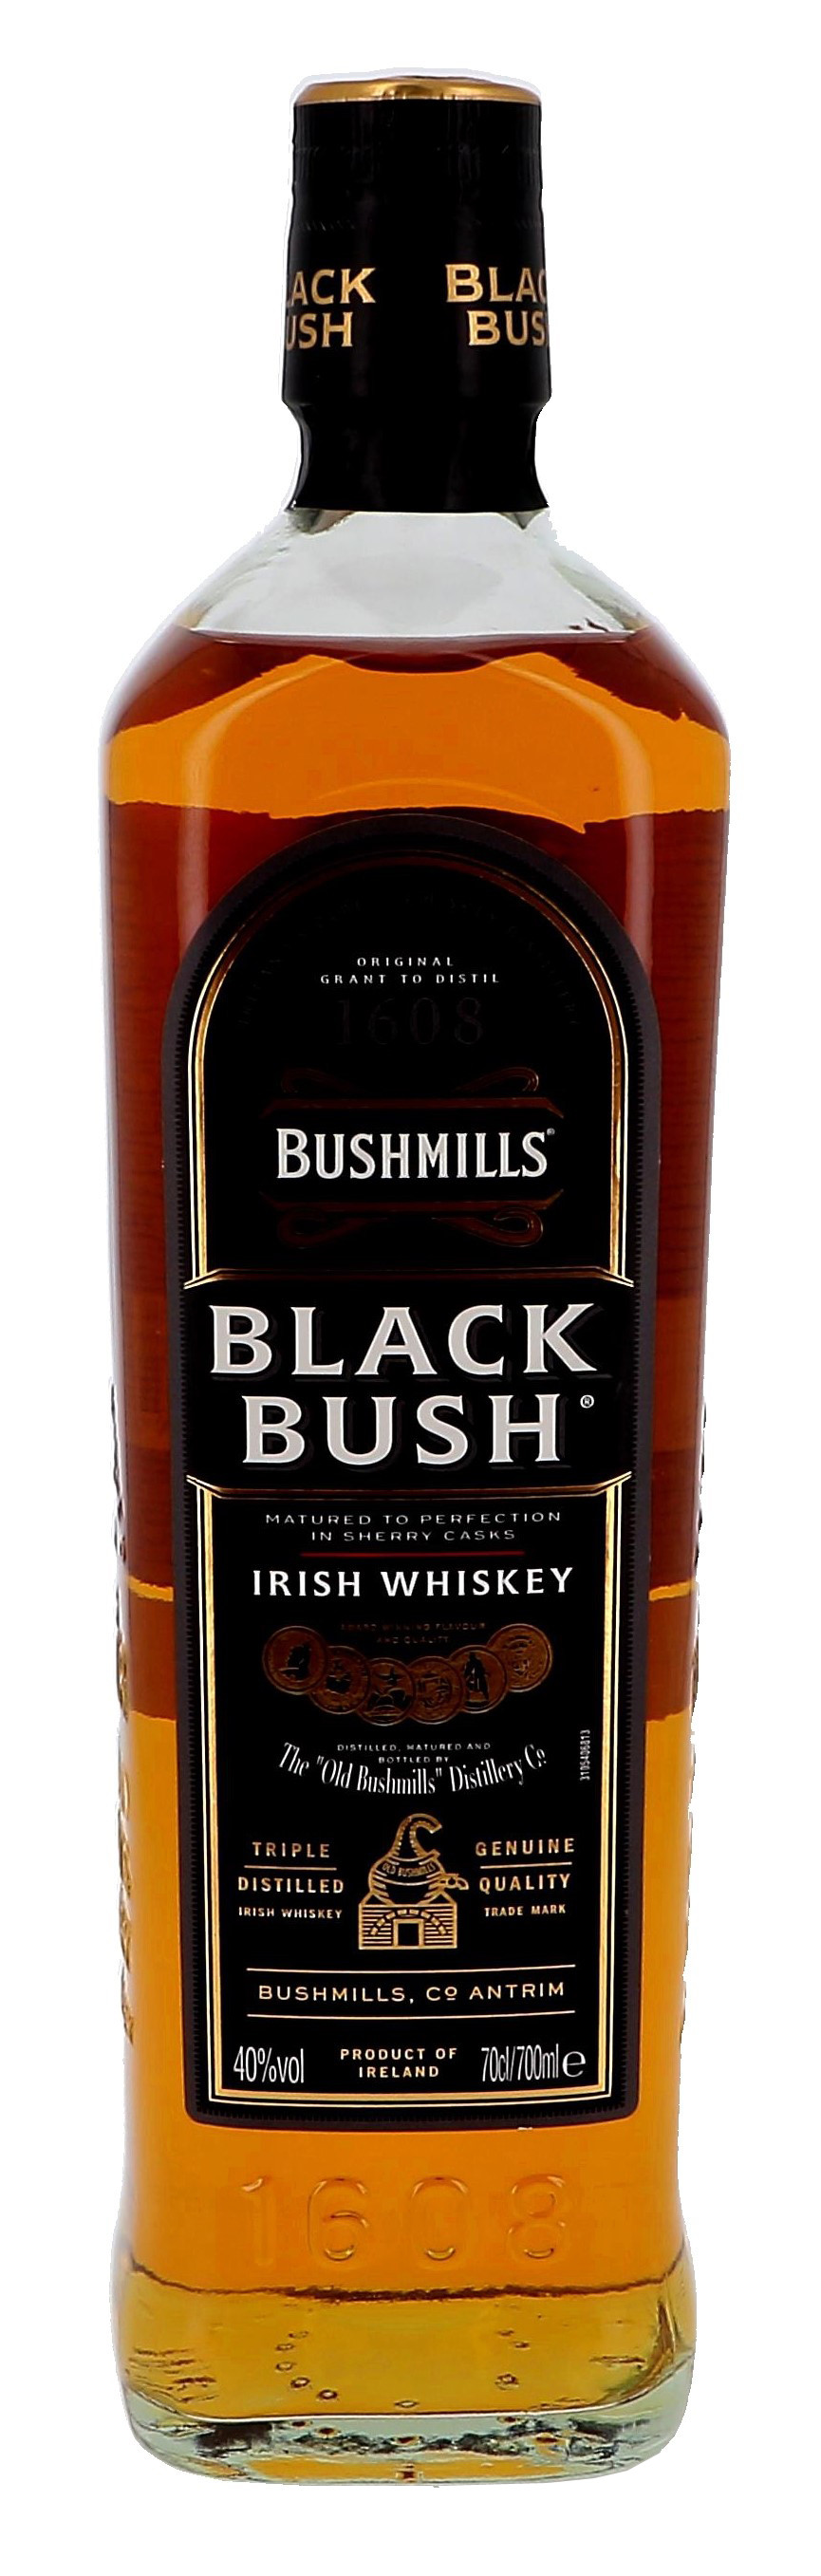 Black bush 70cl 40% irish whiskey